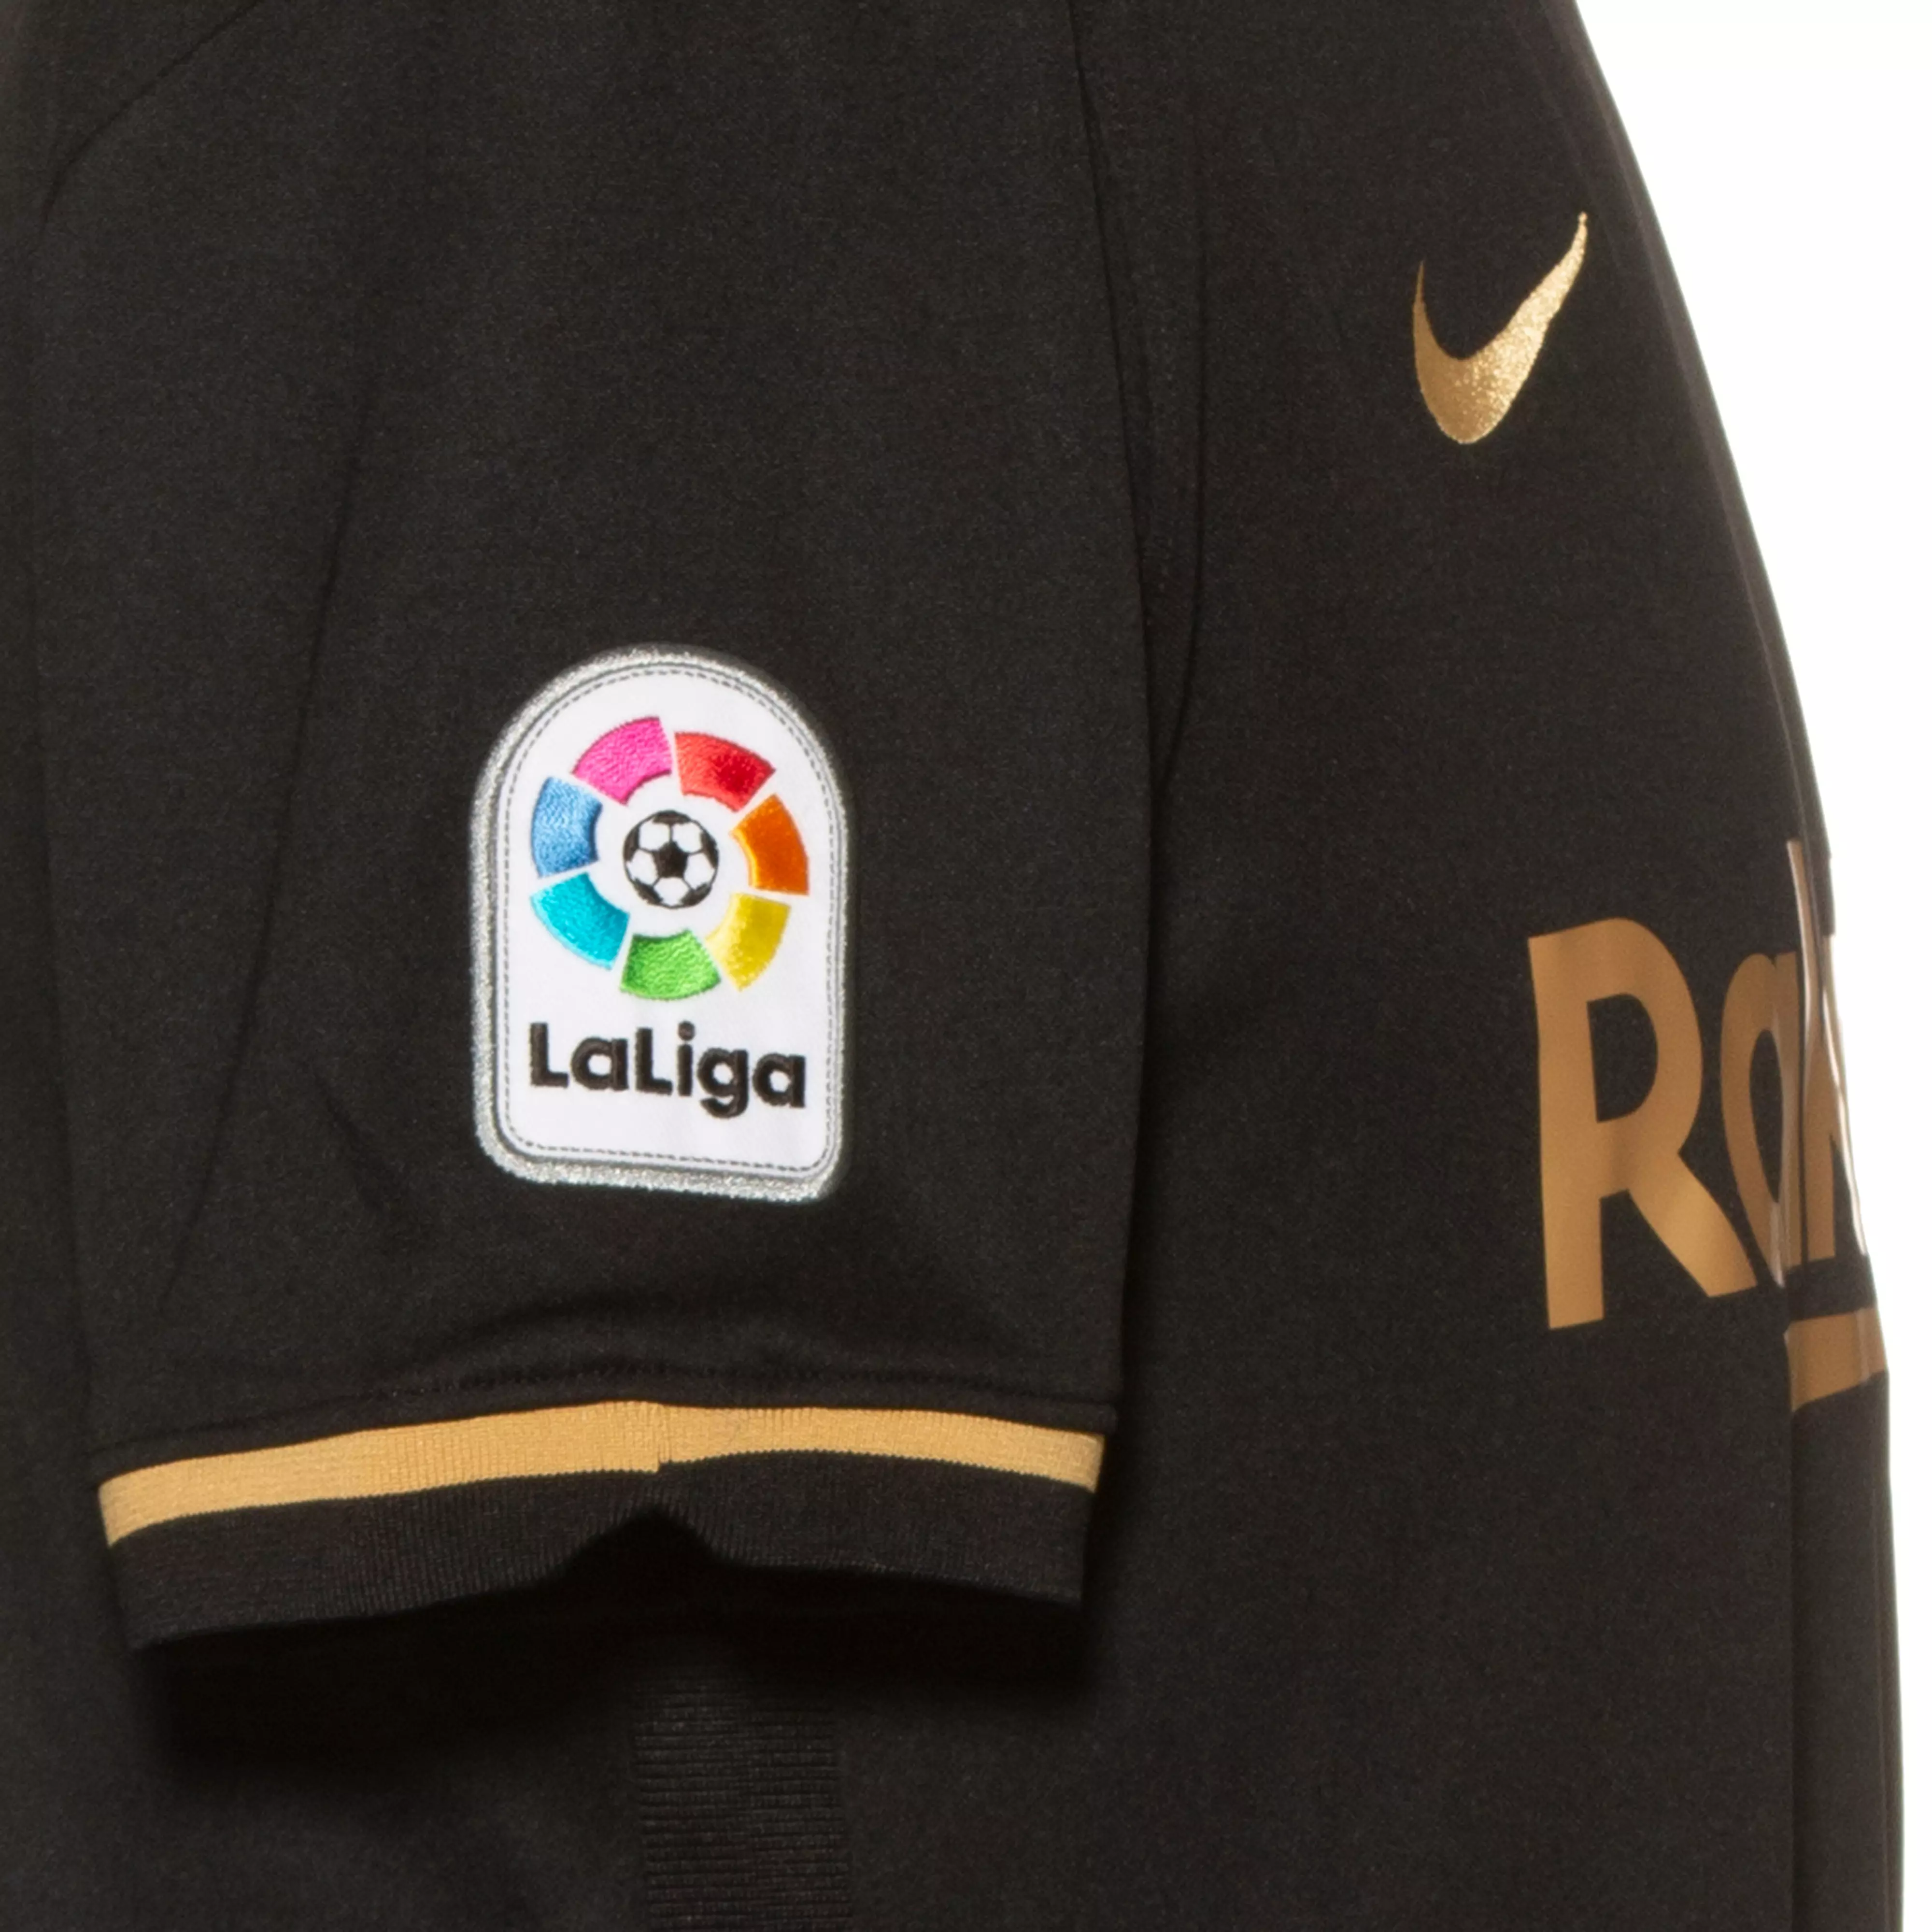 Nike Fc Barcelona 20 21 Auswarts Trikot Herren Black Metallic Gold Im Online Shop Von Sportscheck Kaufen